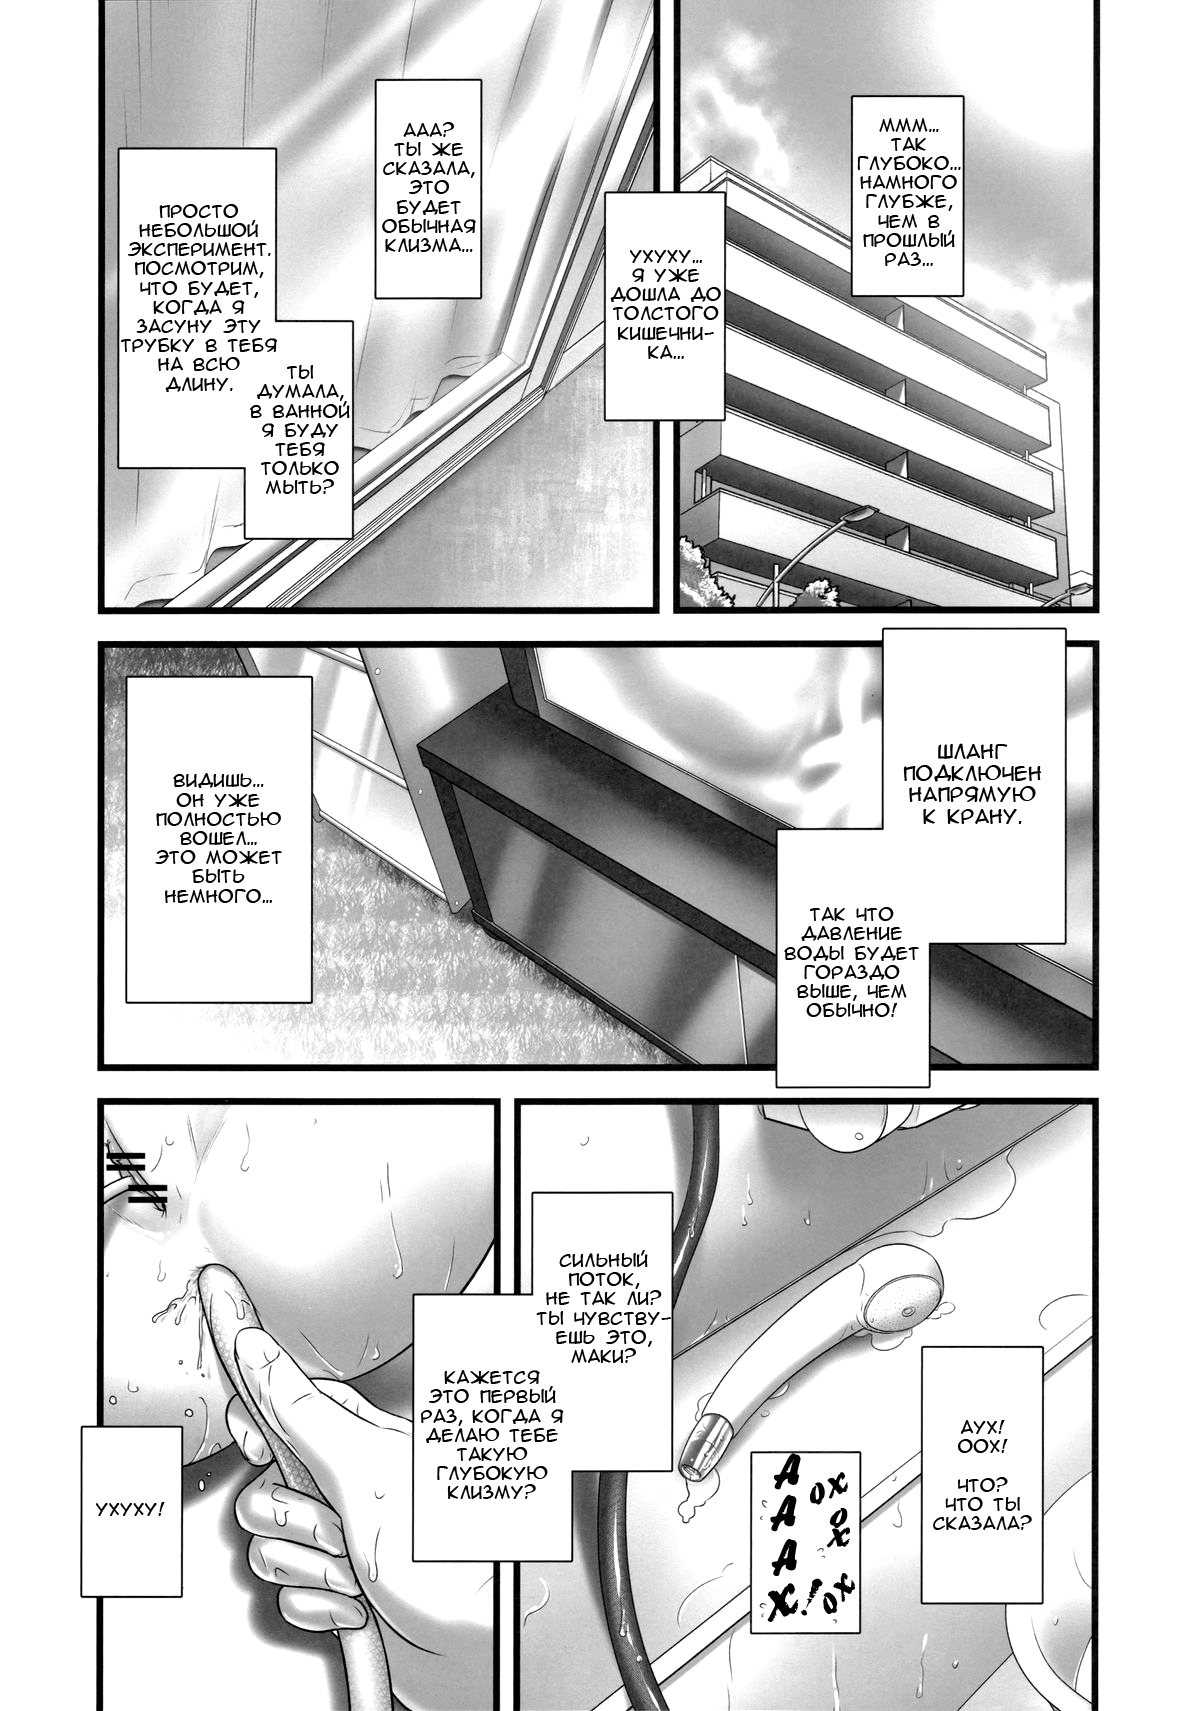 1200px x 1711px - Oshikko Sensei 5 - Page 3 - IMHentai